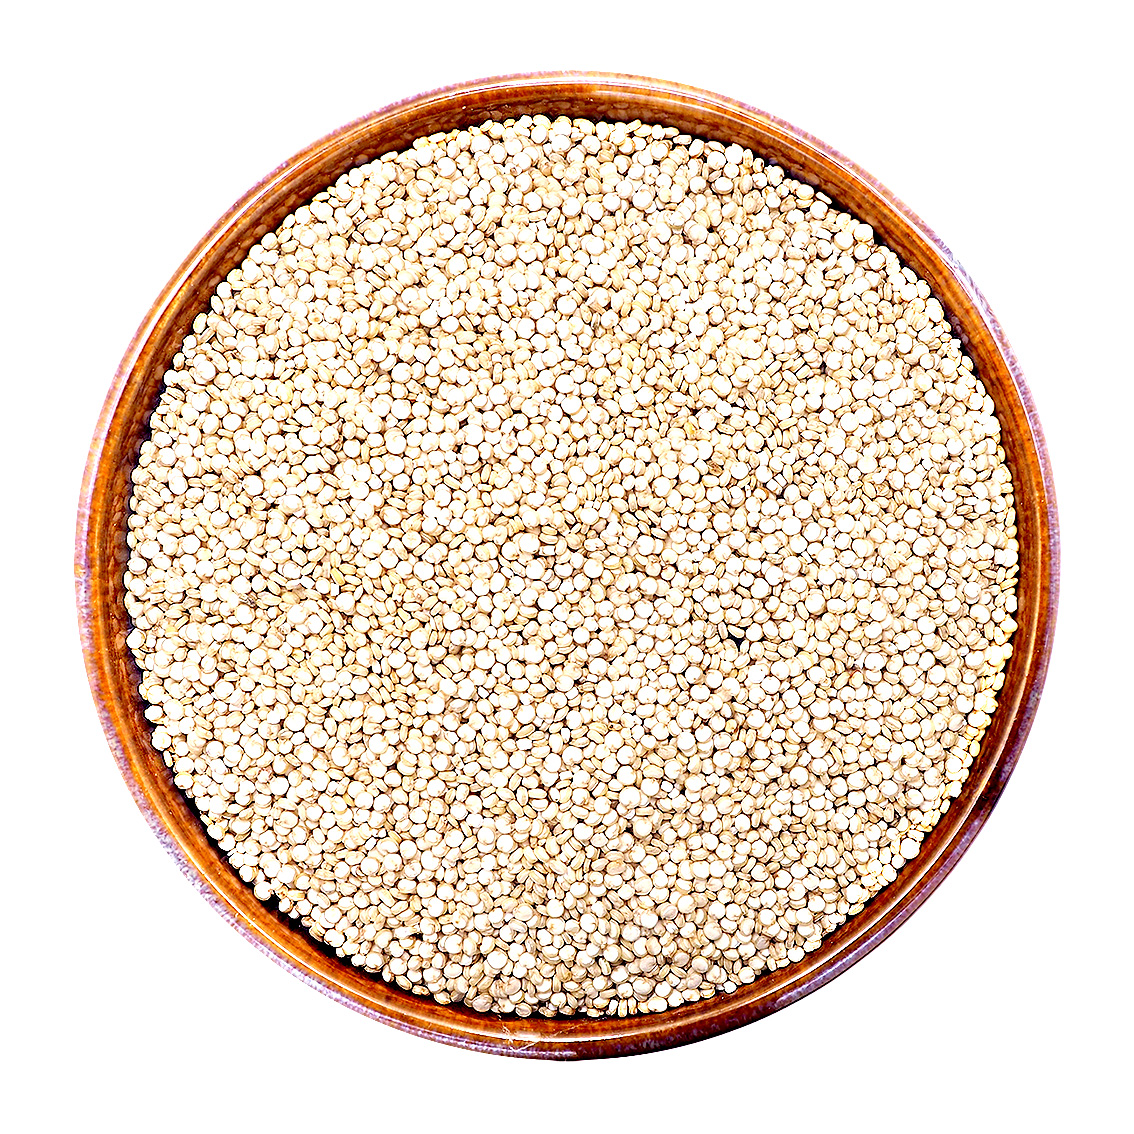 ควินัวสีขาว / Organic White Quinoa ขนาด 1 กก.